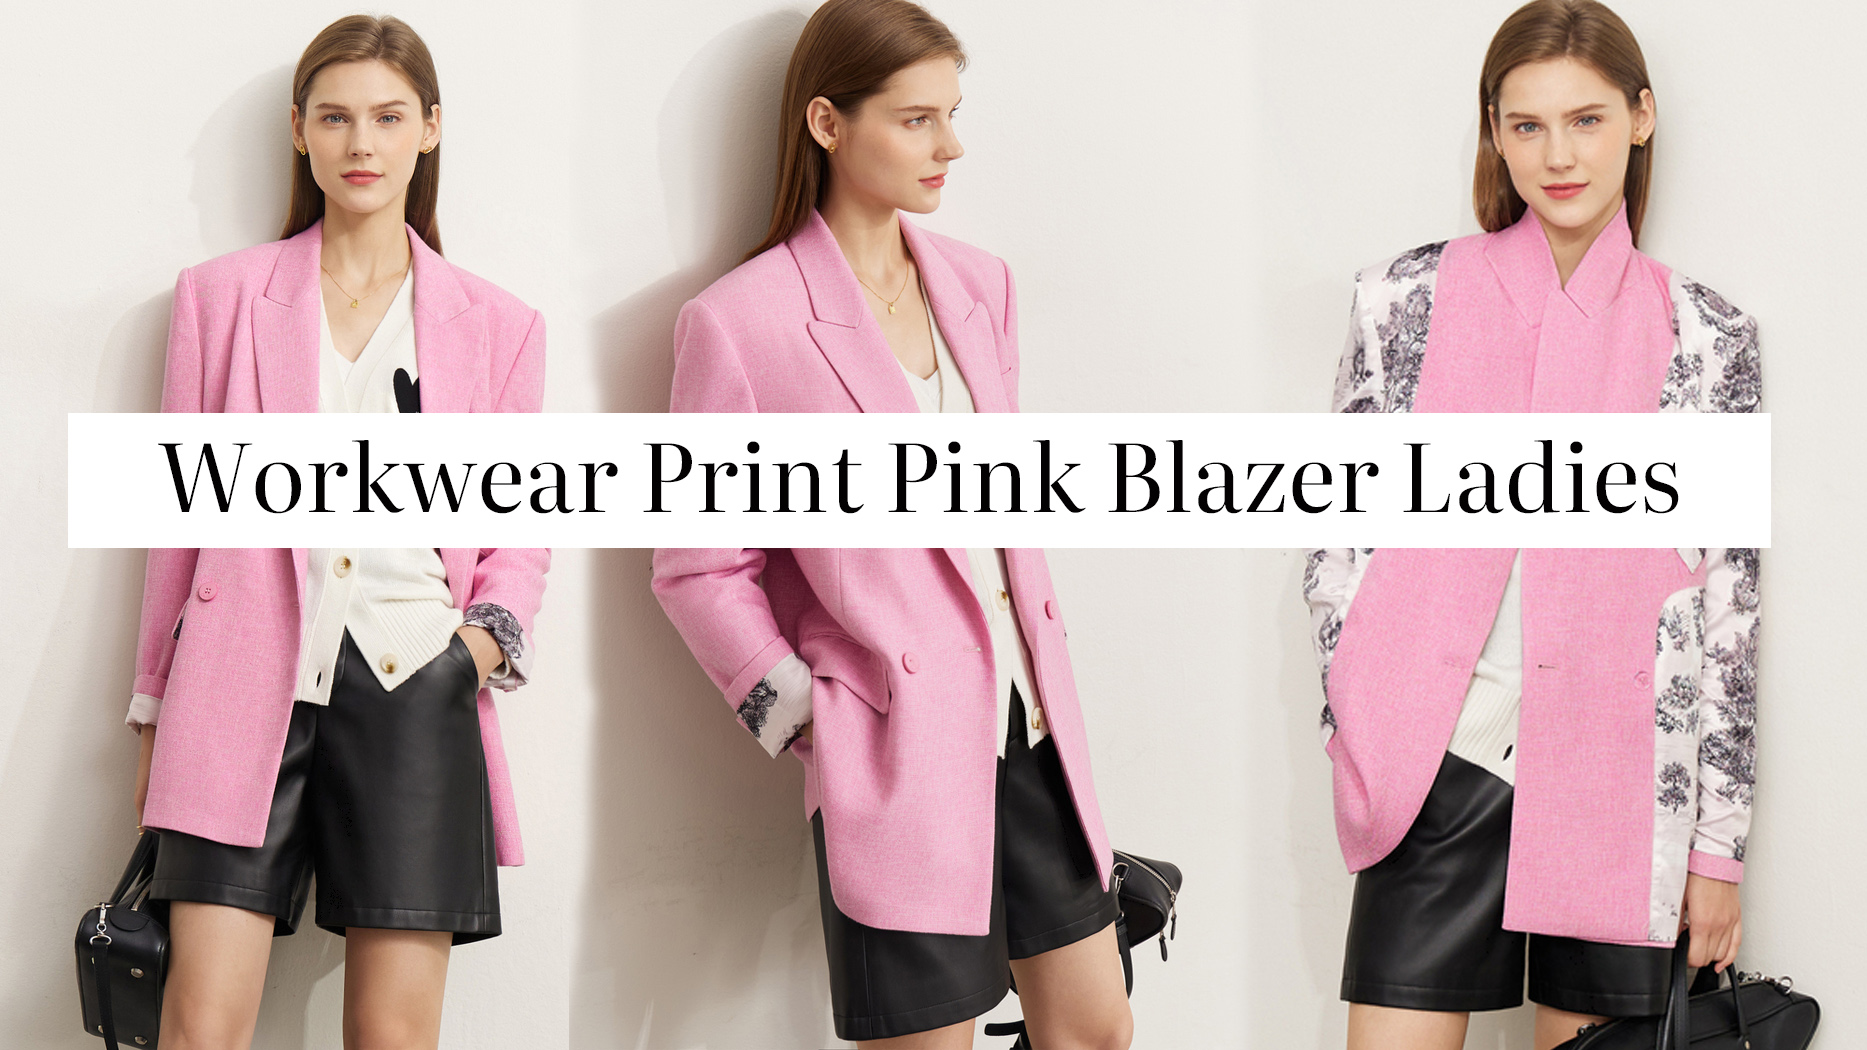 Quality Workwear Print Pink Blazer Ladies Manufacturer |Auschalink